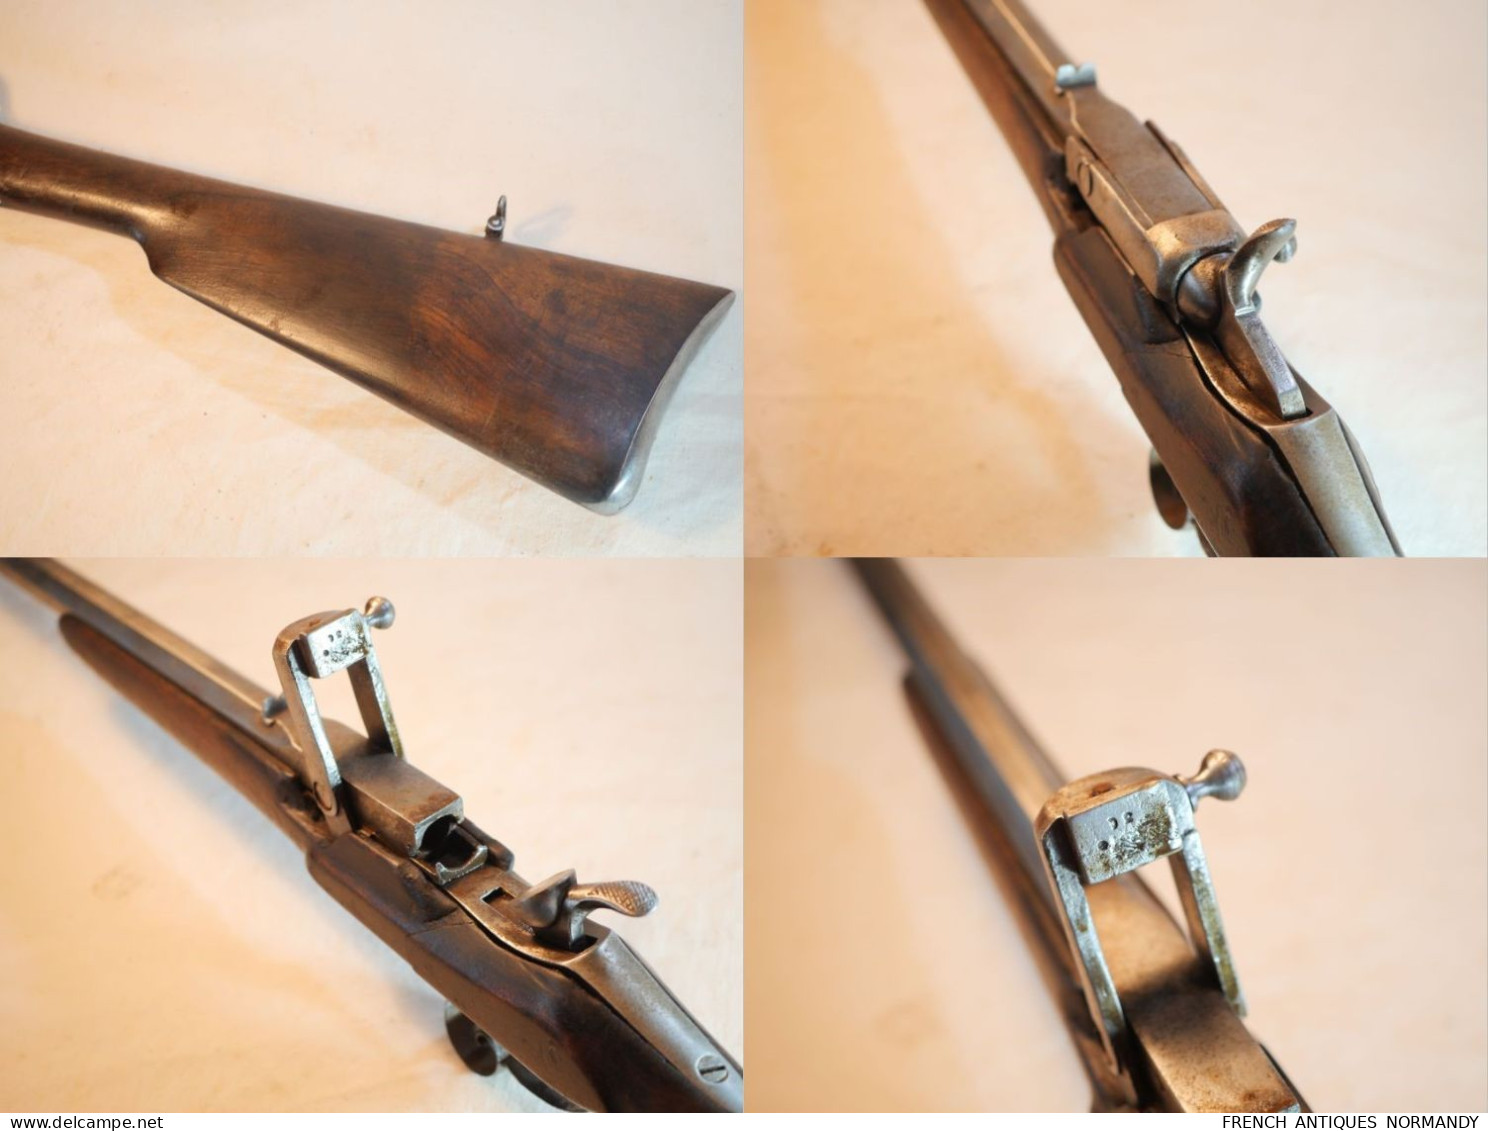 Carabine avant 1870 Warnant 9mm Manufacture Armes Saint Étienne percussion centrale chien externe JLB21WAR001